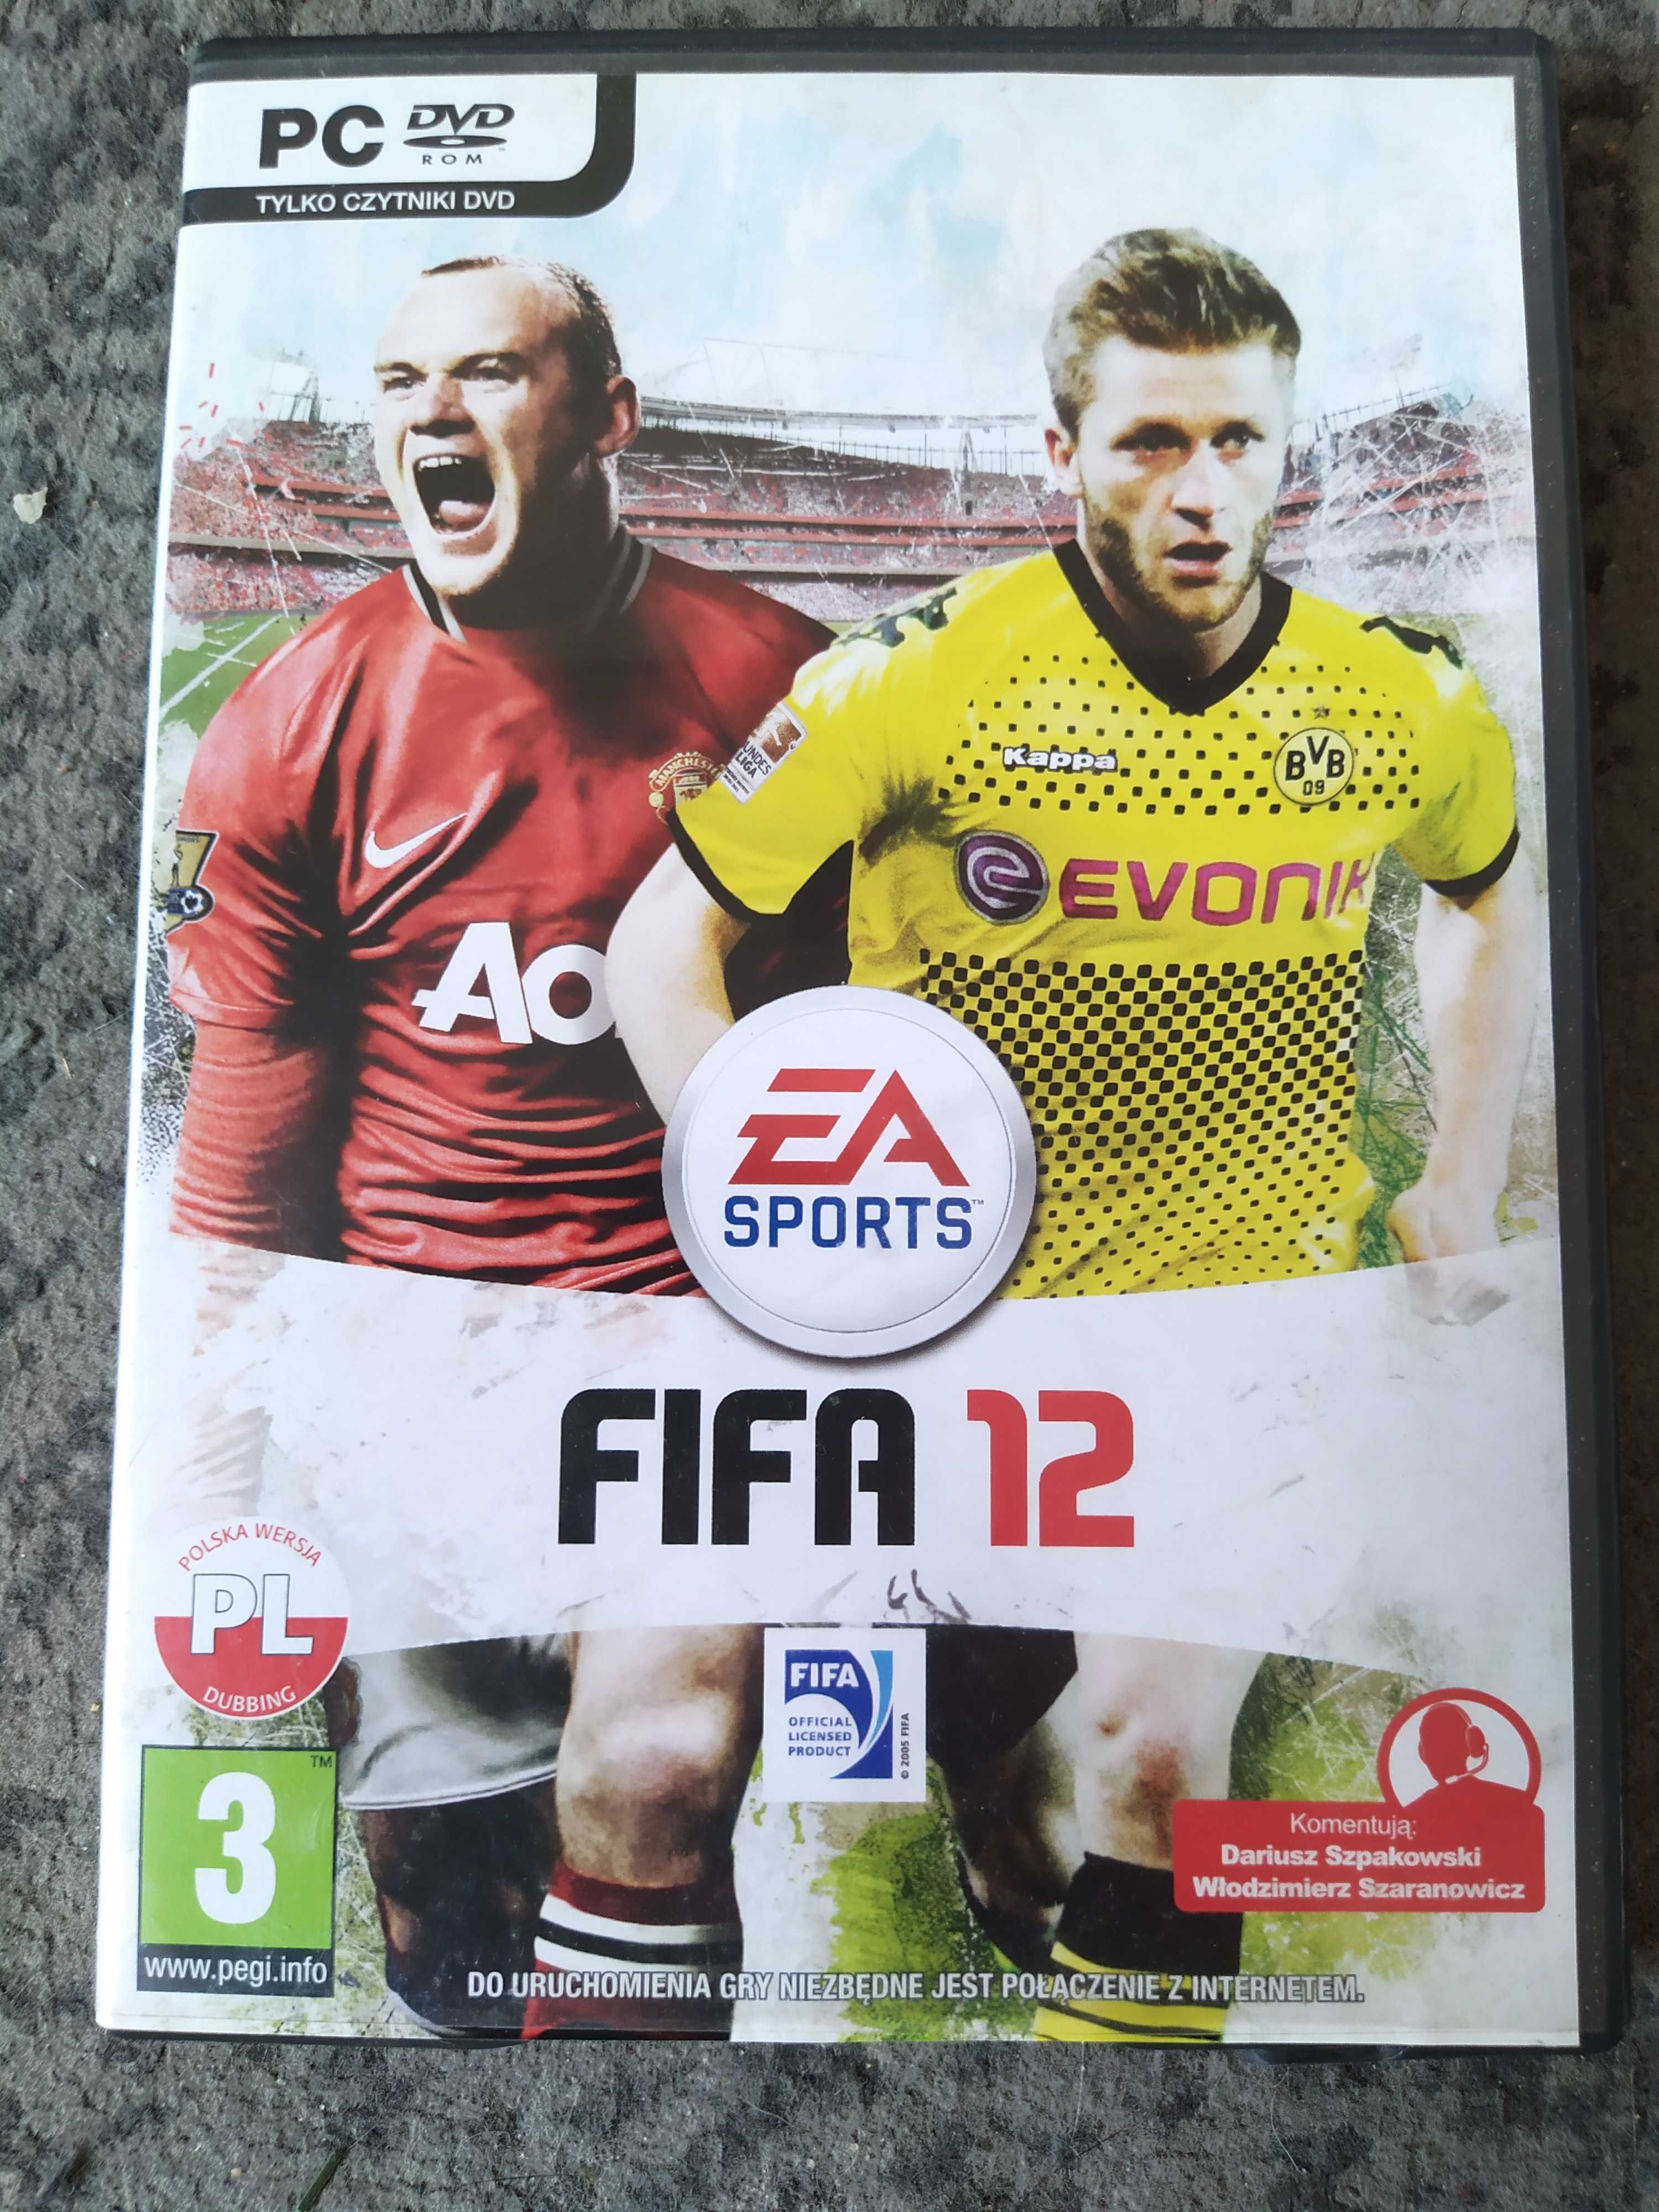 FIFA 12 PC DVD non-cdkey